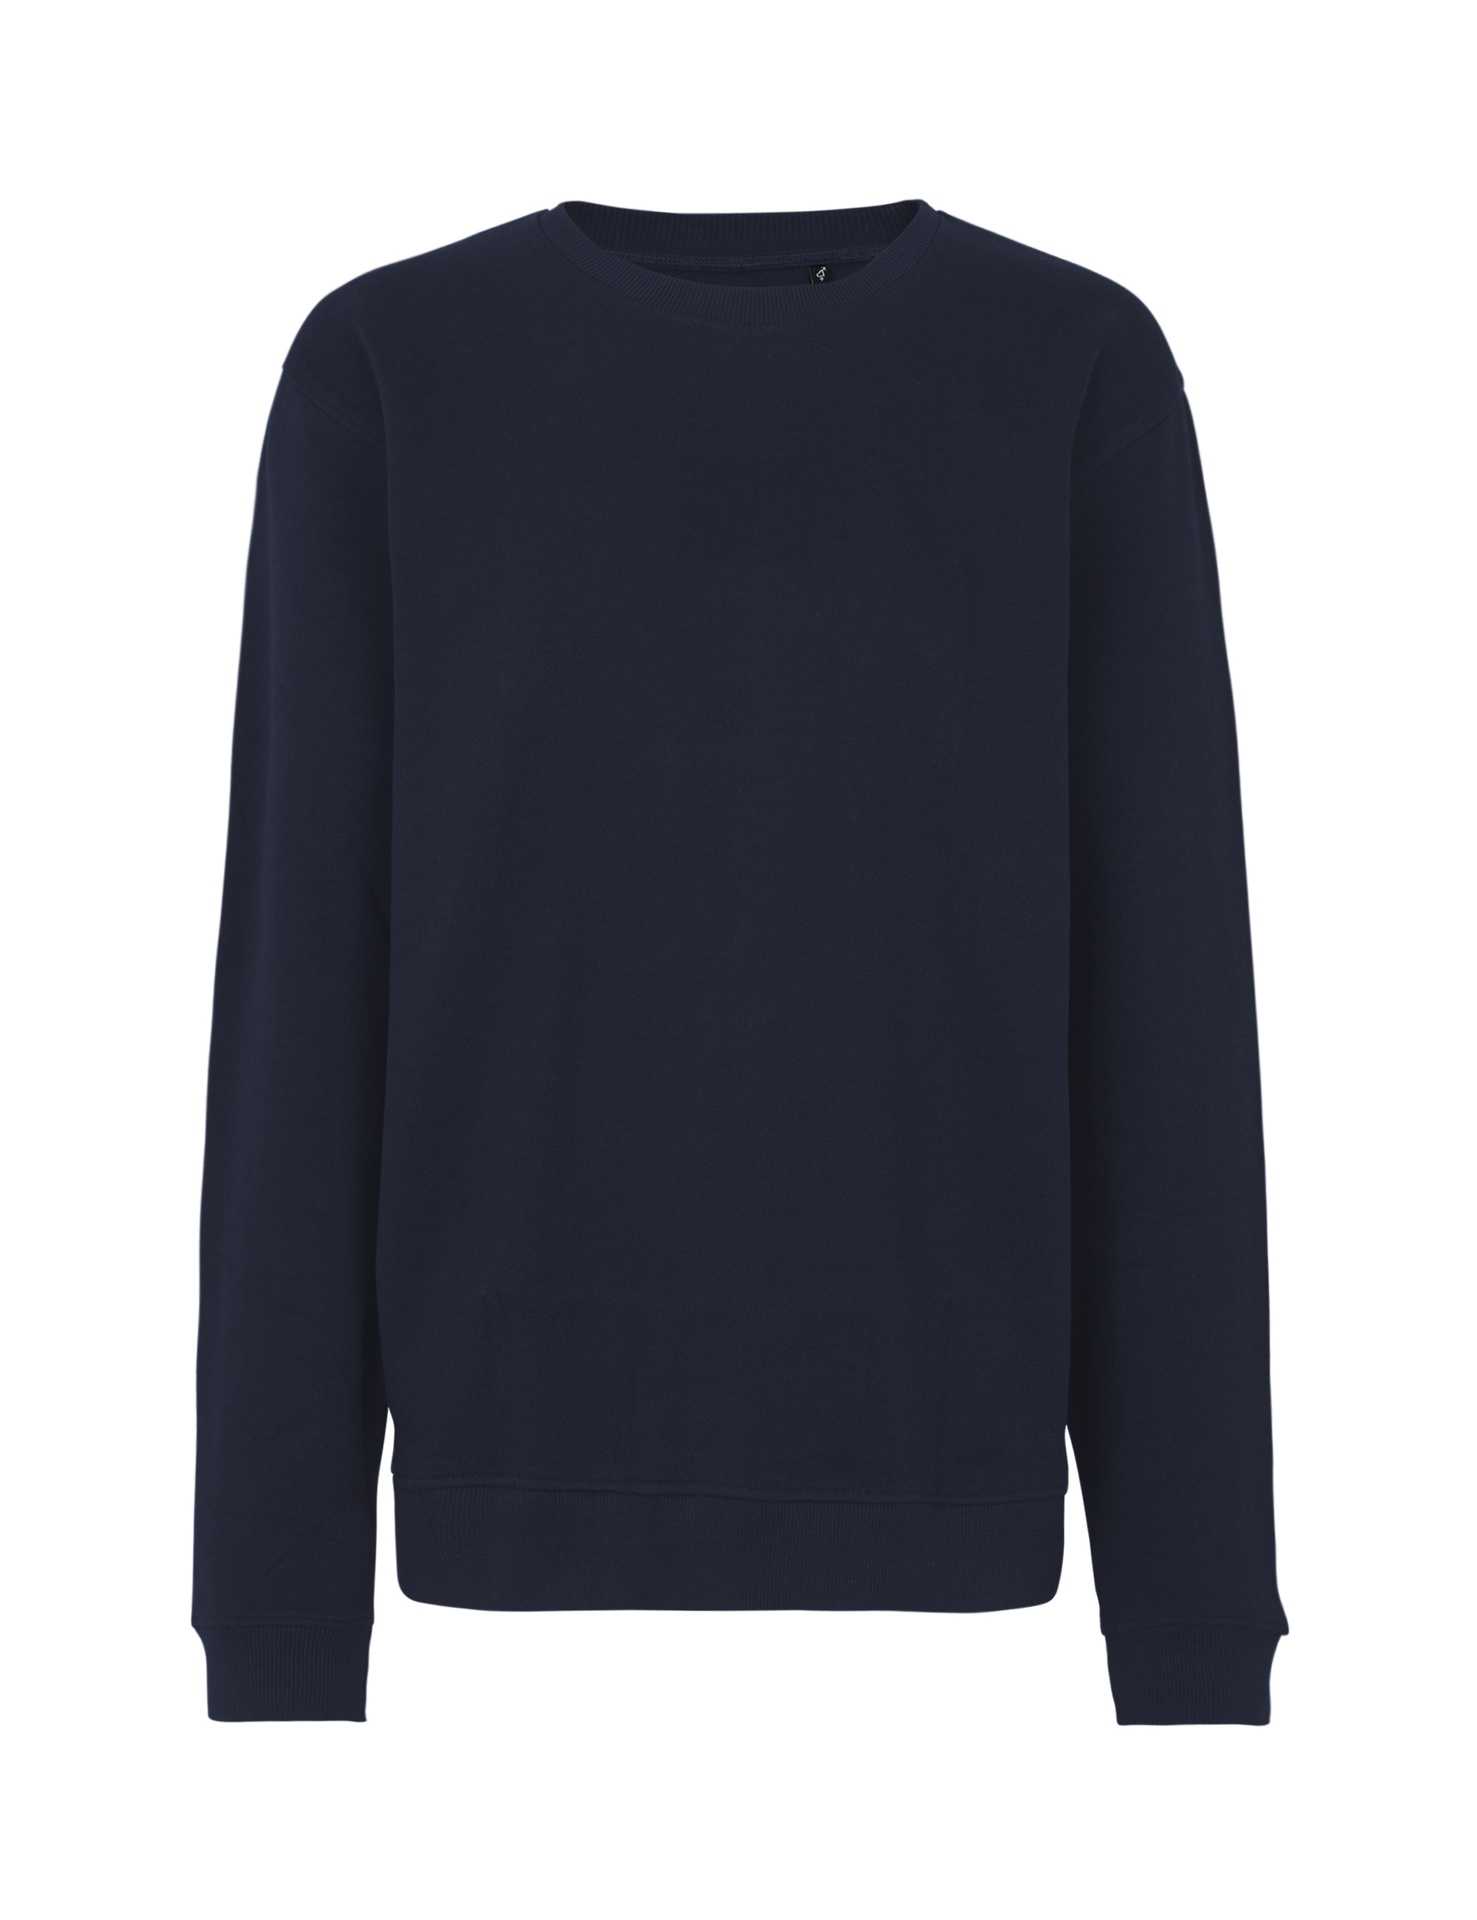 [PR/03536] Unisex Workwear Sweatshirt (Navy 04, 3XL)